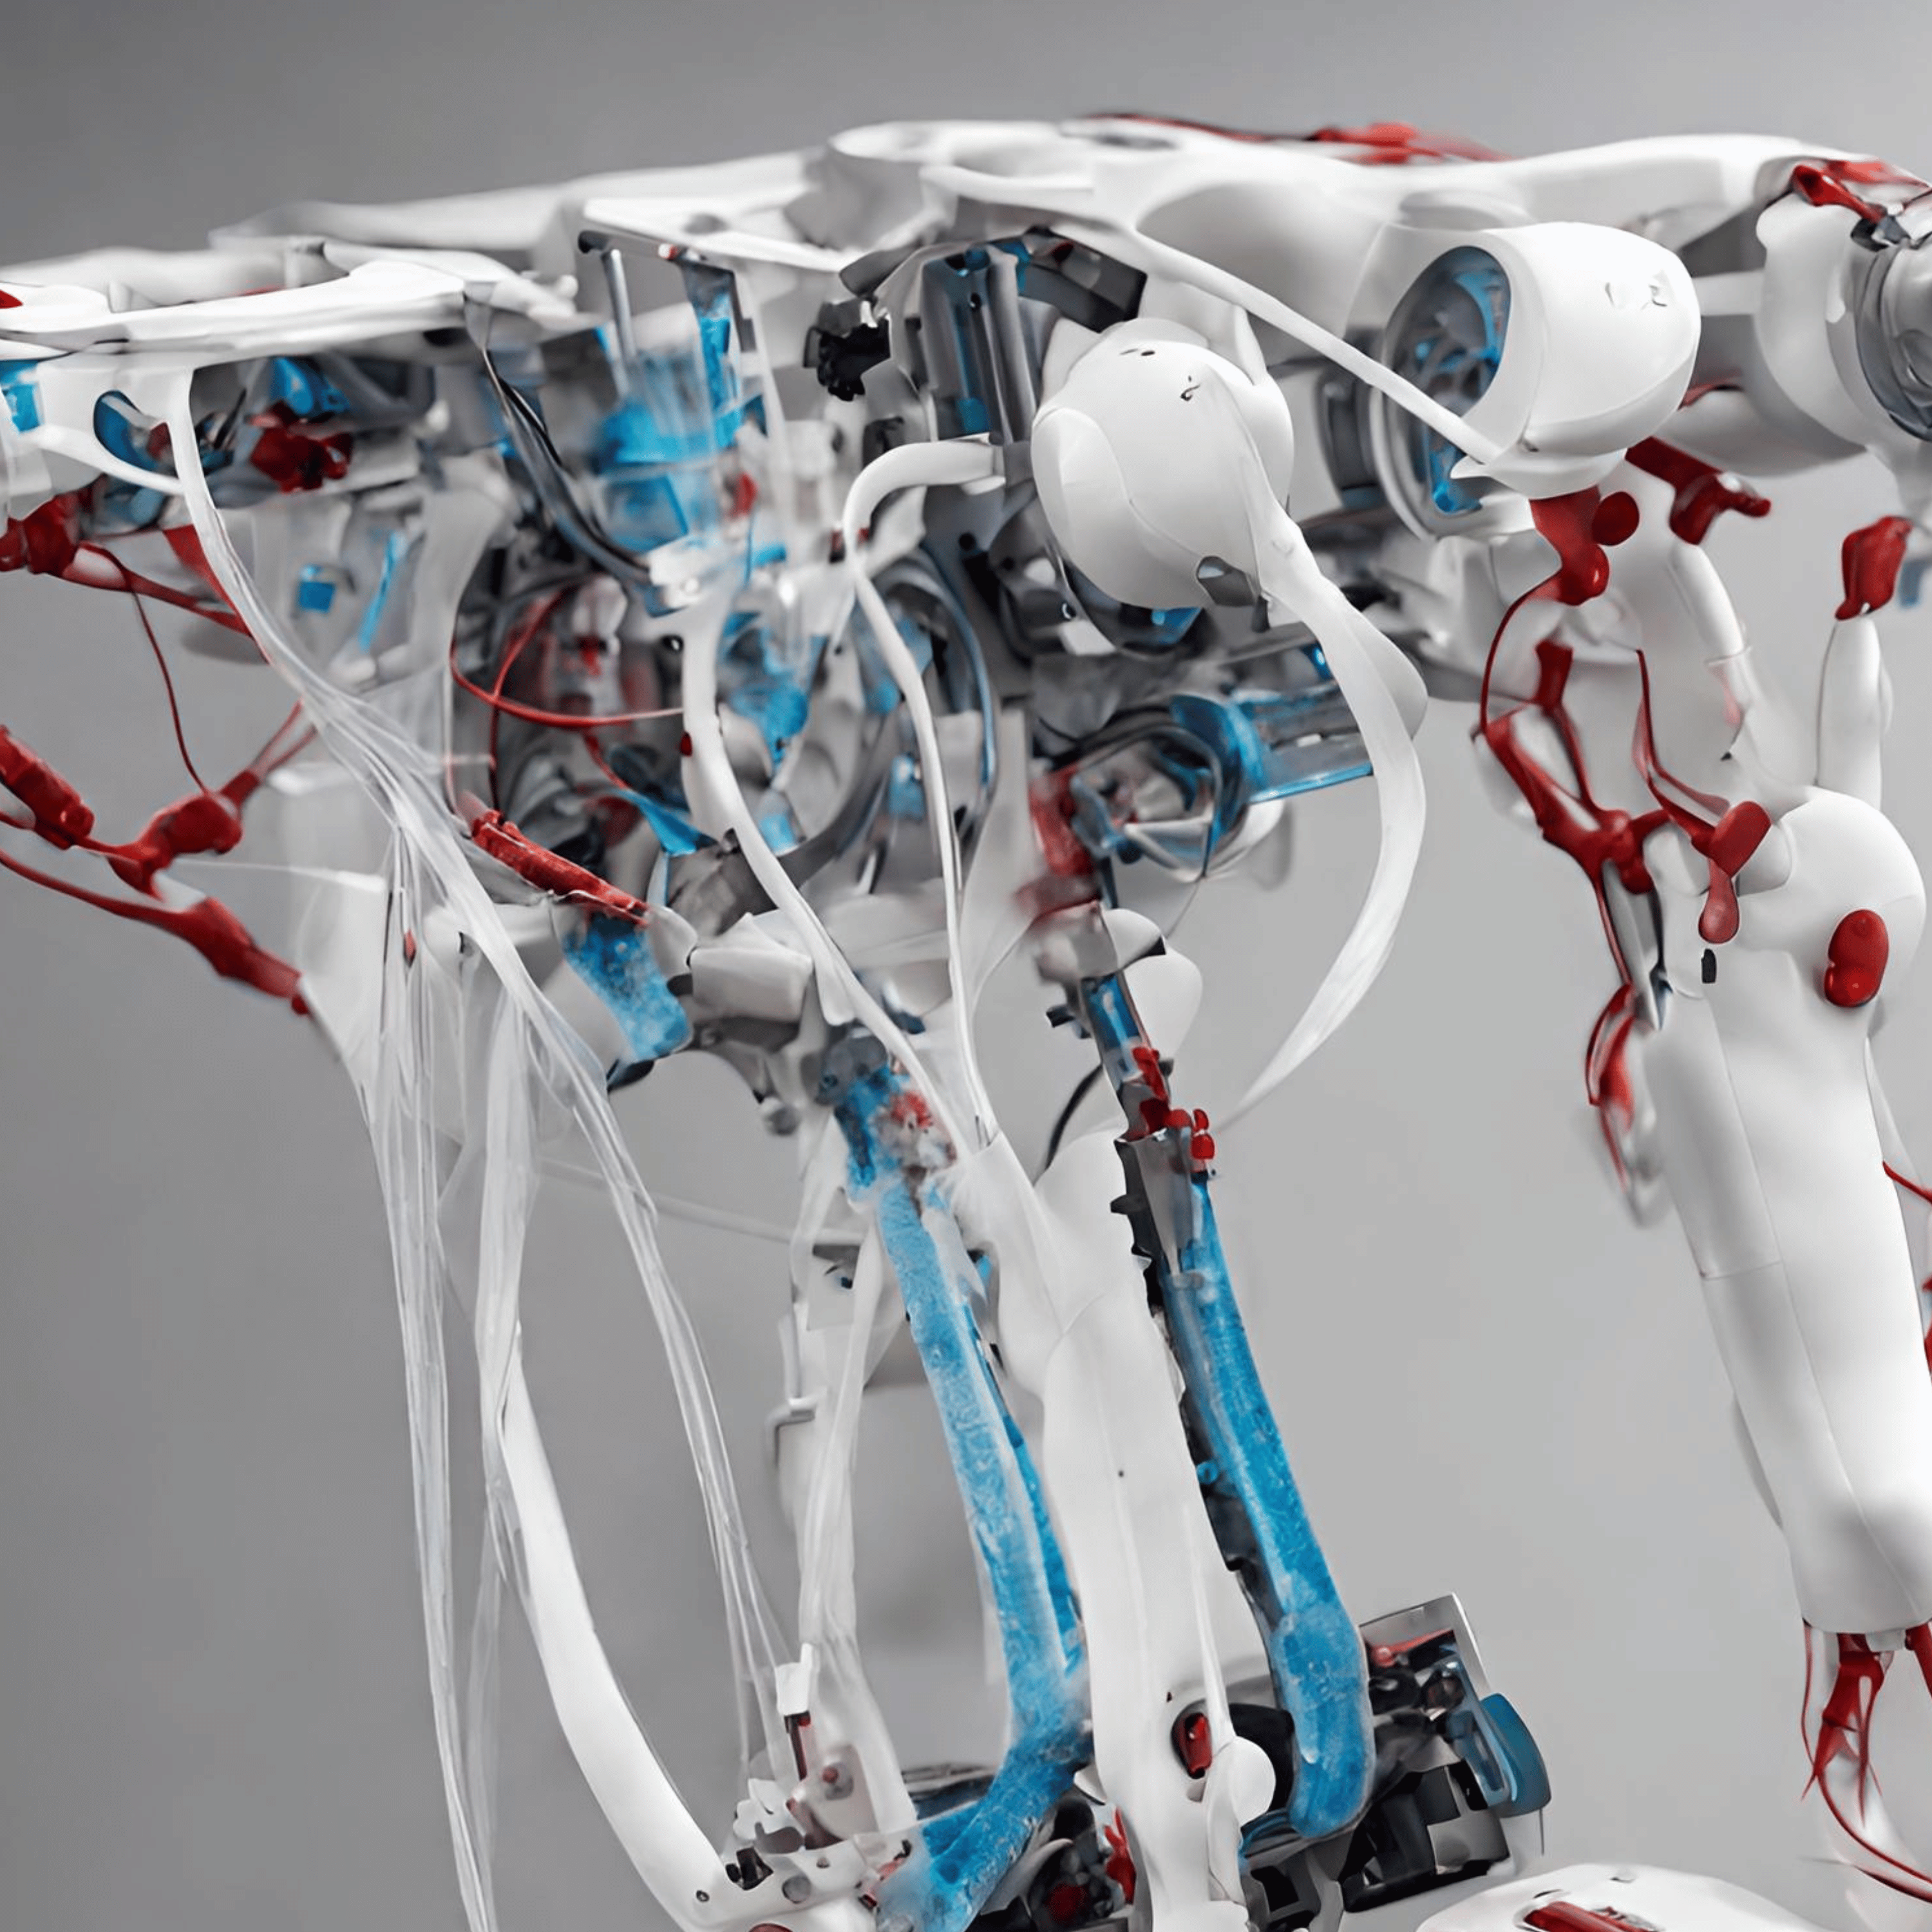 Revolutionäre Robotik: Gedruckte Roboter mit Knochen, Sehnen und Bändern bieten vielseitige Anwendungsmöglichkeiten und Innovationspotenzial